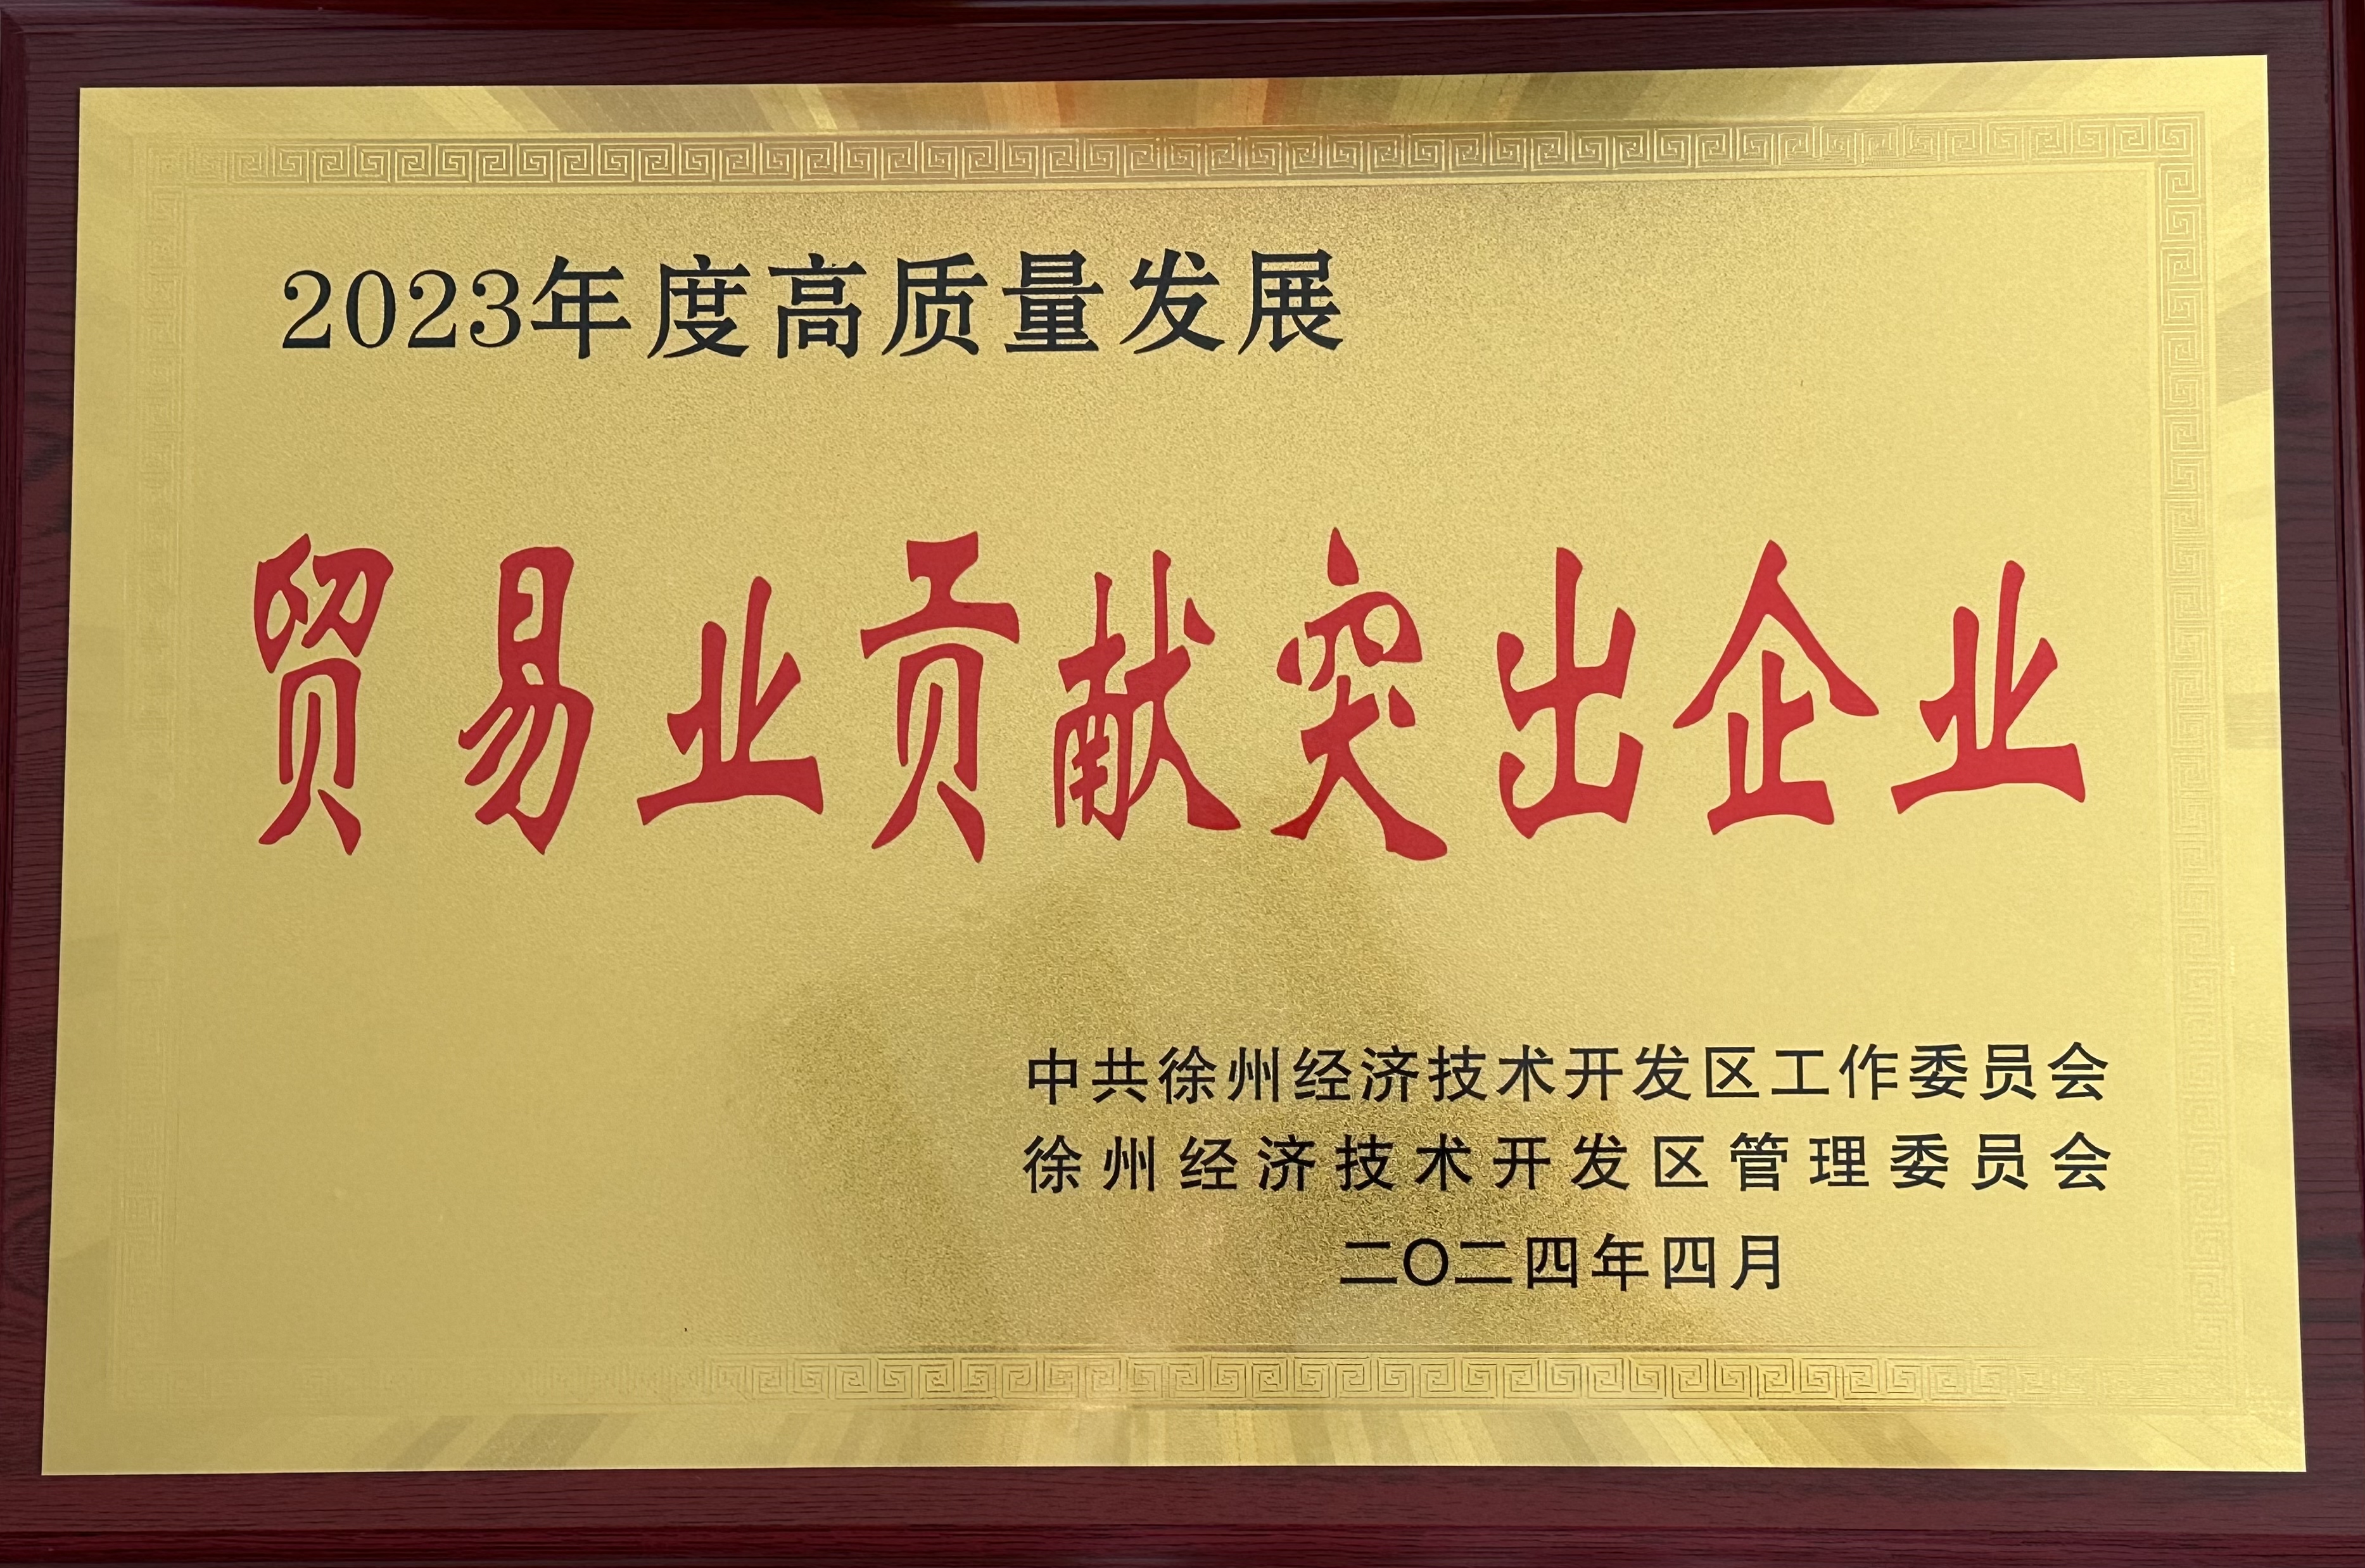 交控供应链公司荣获徐州经济技术开发区2023年度“贸易业突出贡献企业”称号